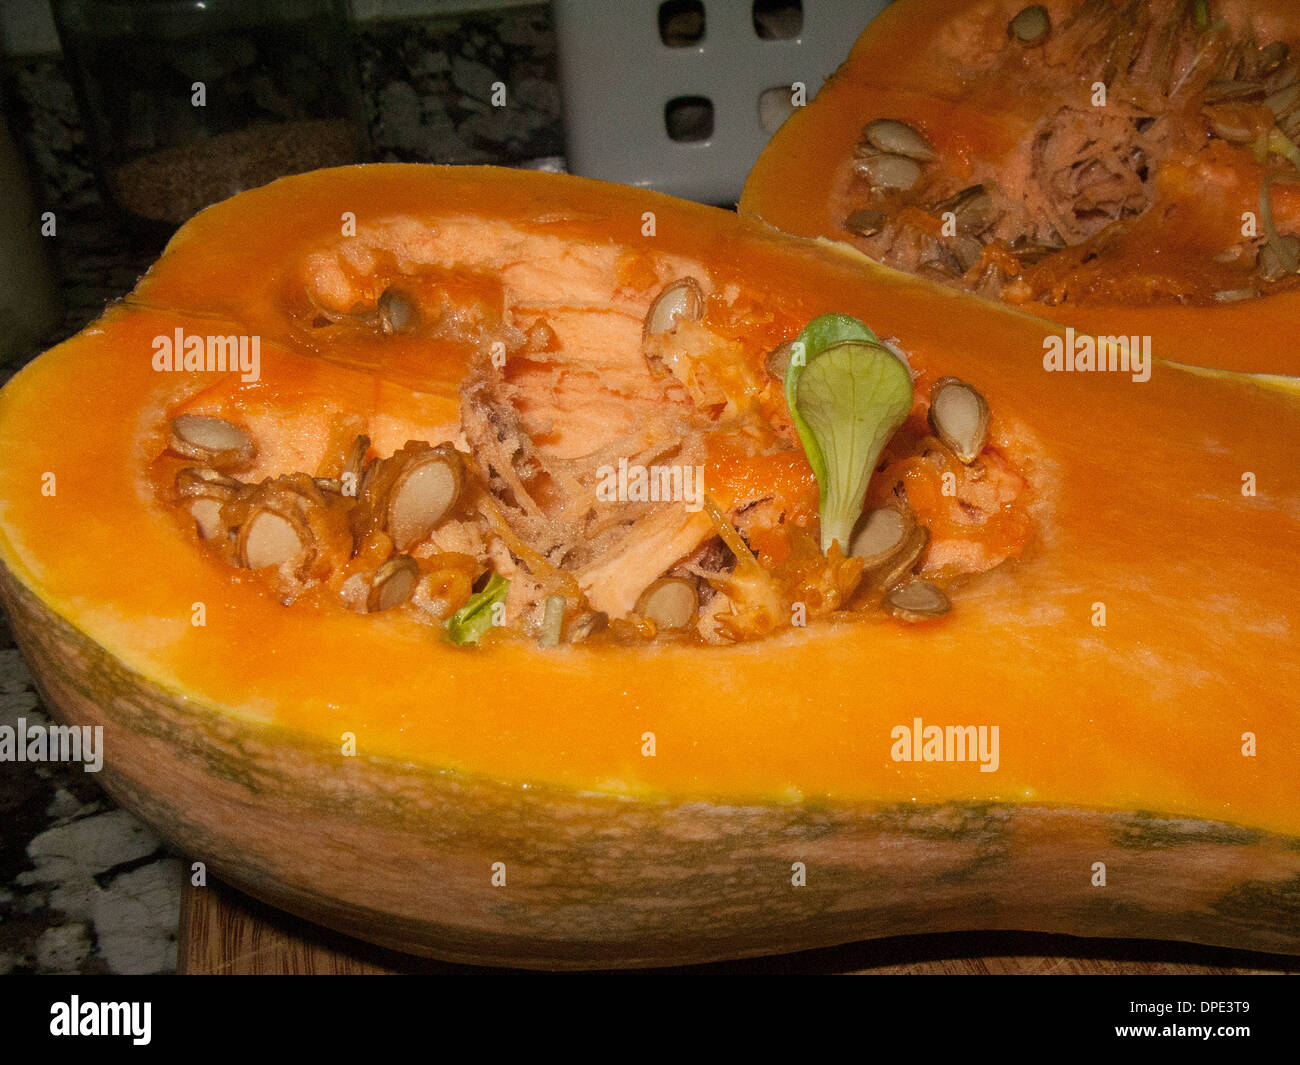 Germination of seeds inside a pumpkin. Stock Photo